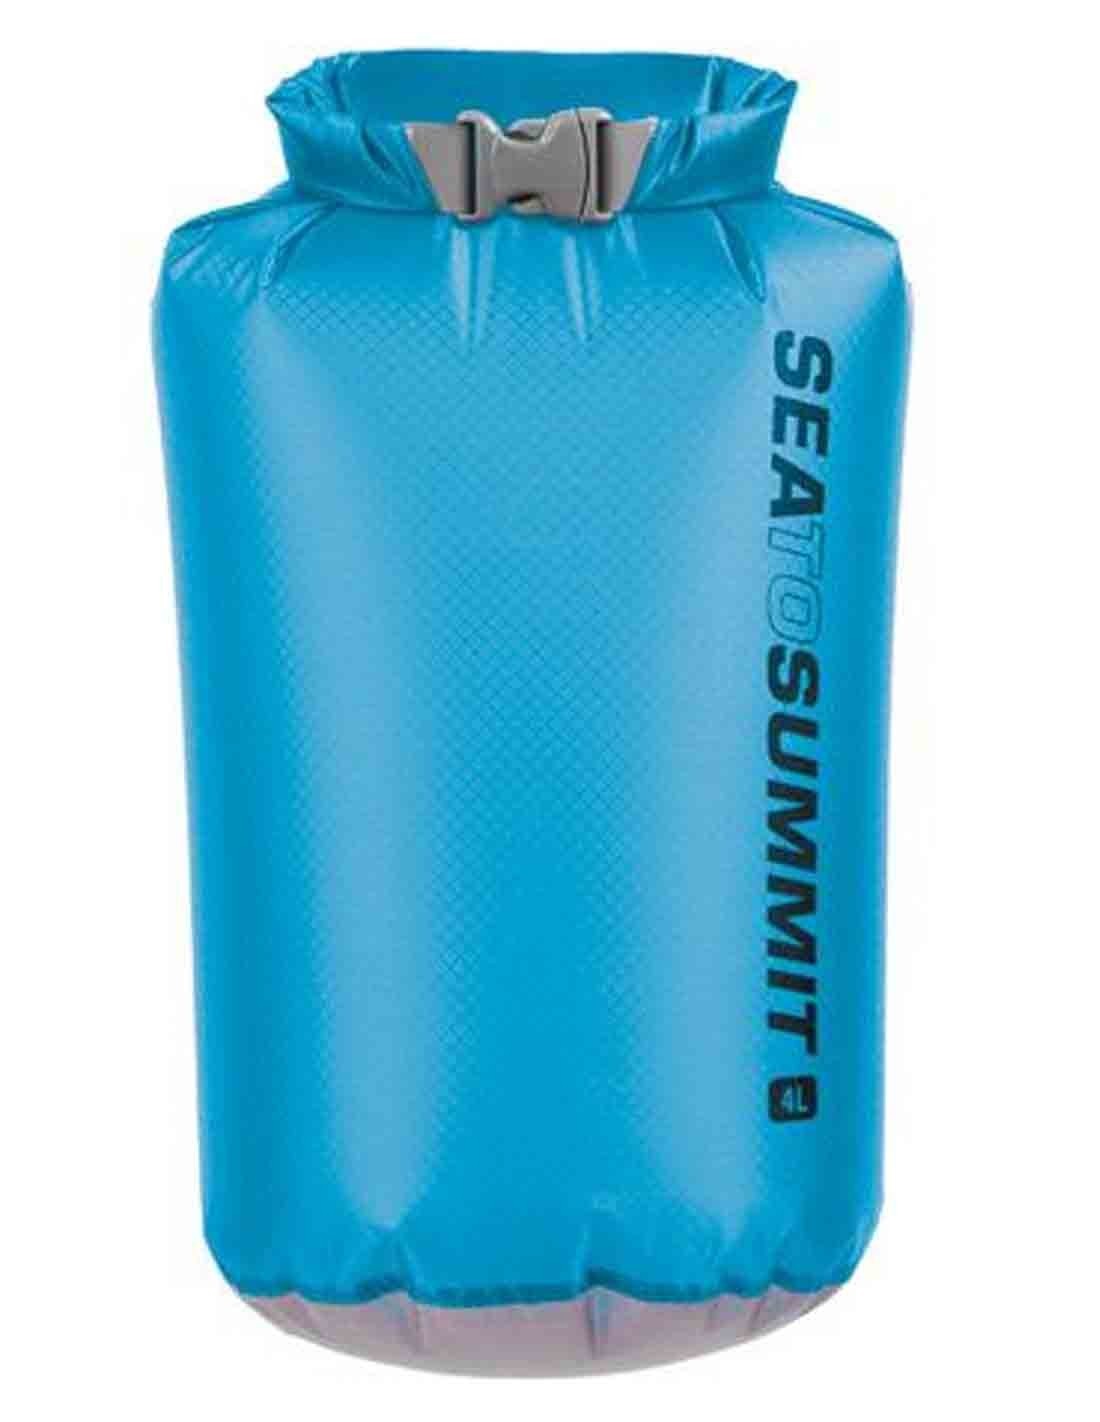 ✔️ Sea To Summit Bolsa Estanca UltraSil 4L